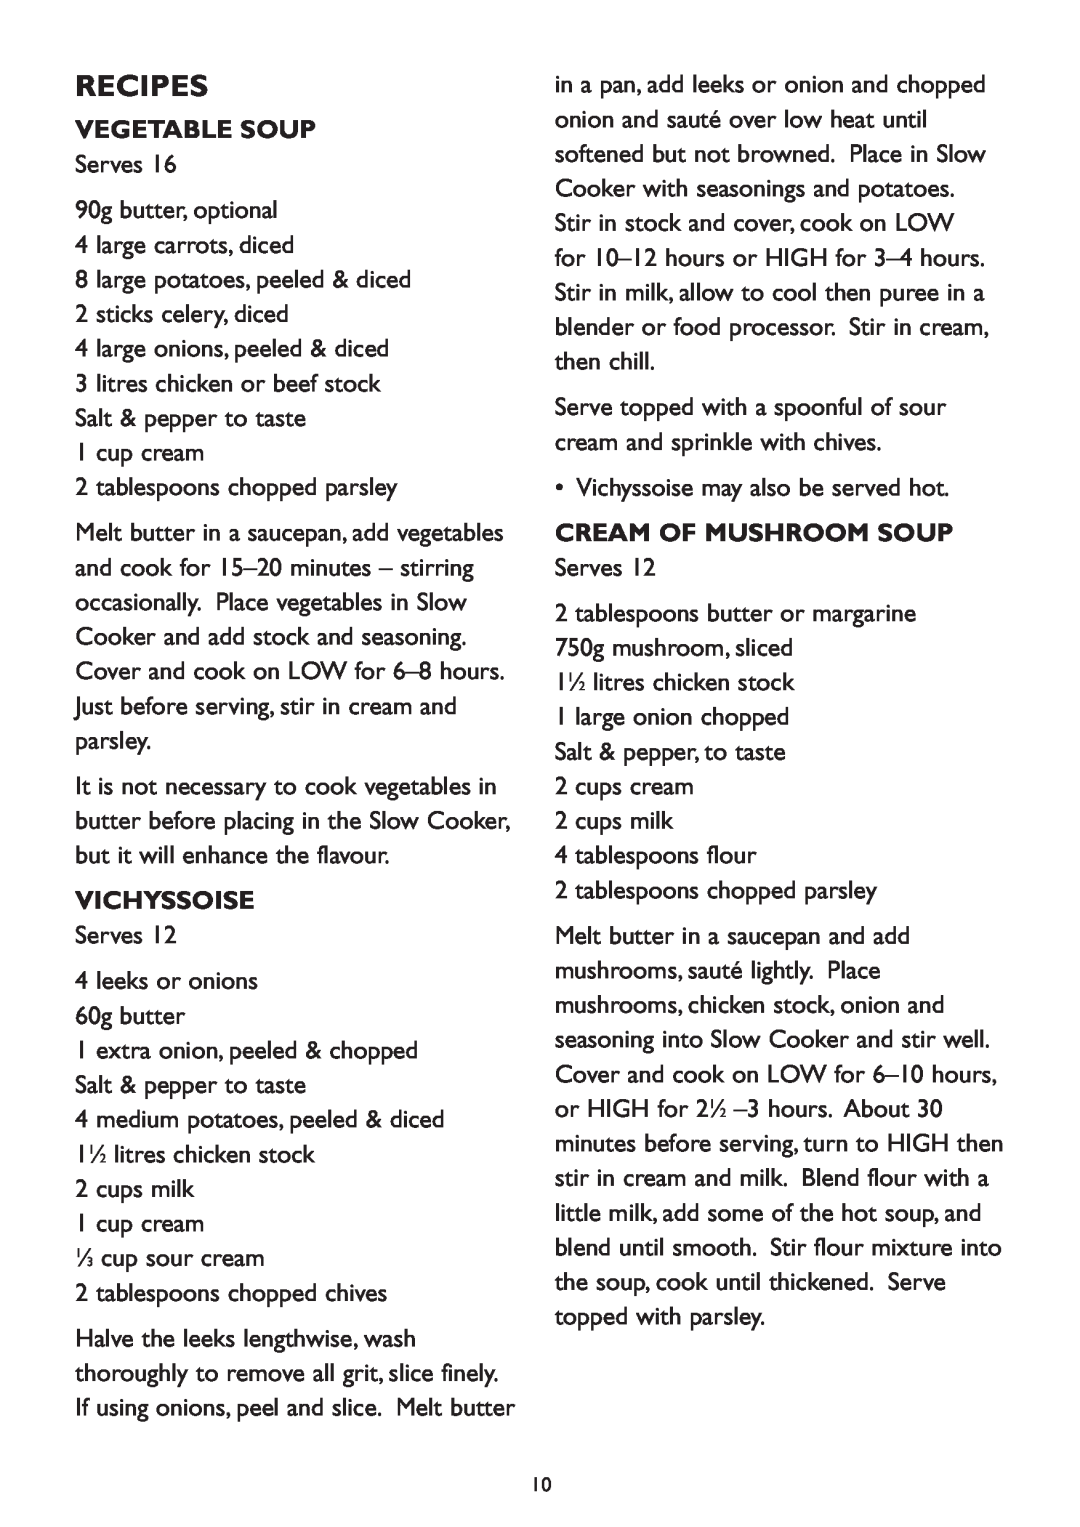 Kambrook KSC 100 manual Recipes, Vegetable Soup, Vichyssoise, Cream Of Mushroom Soup 